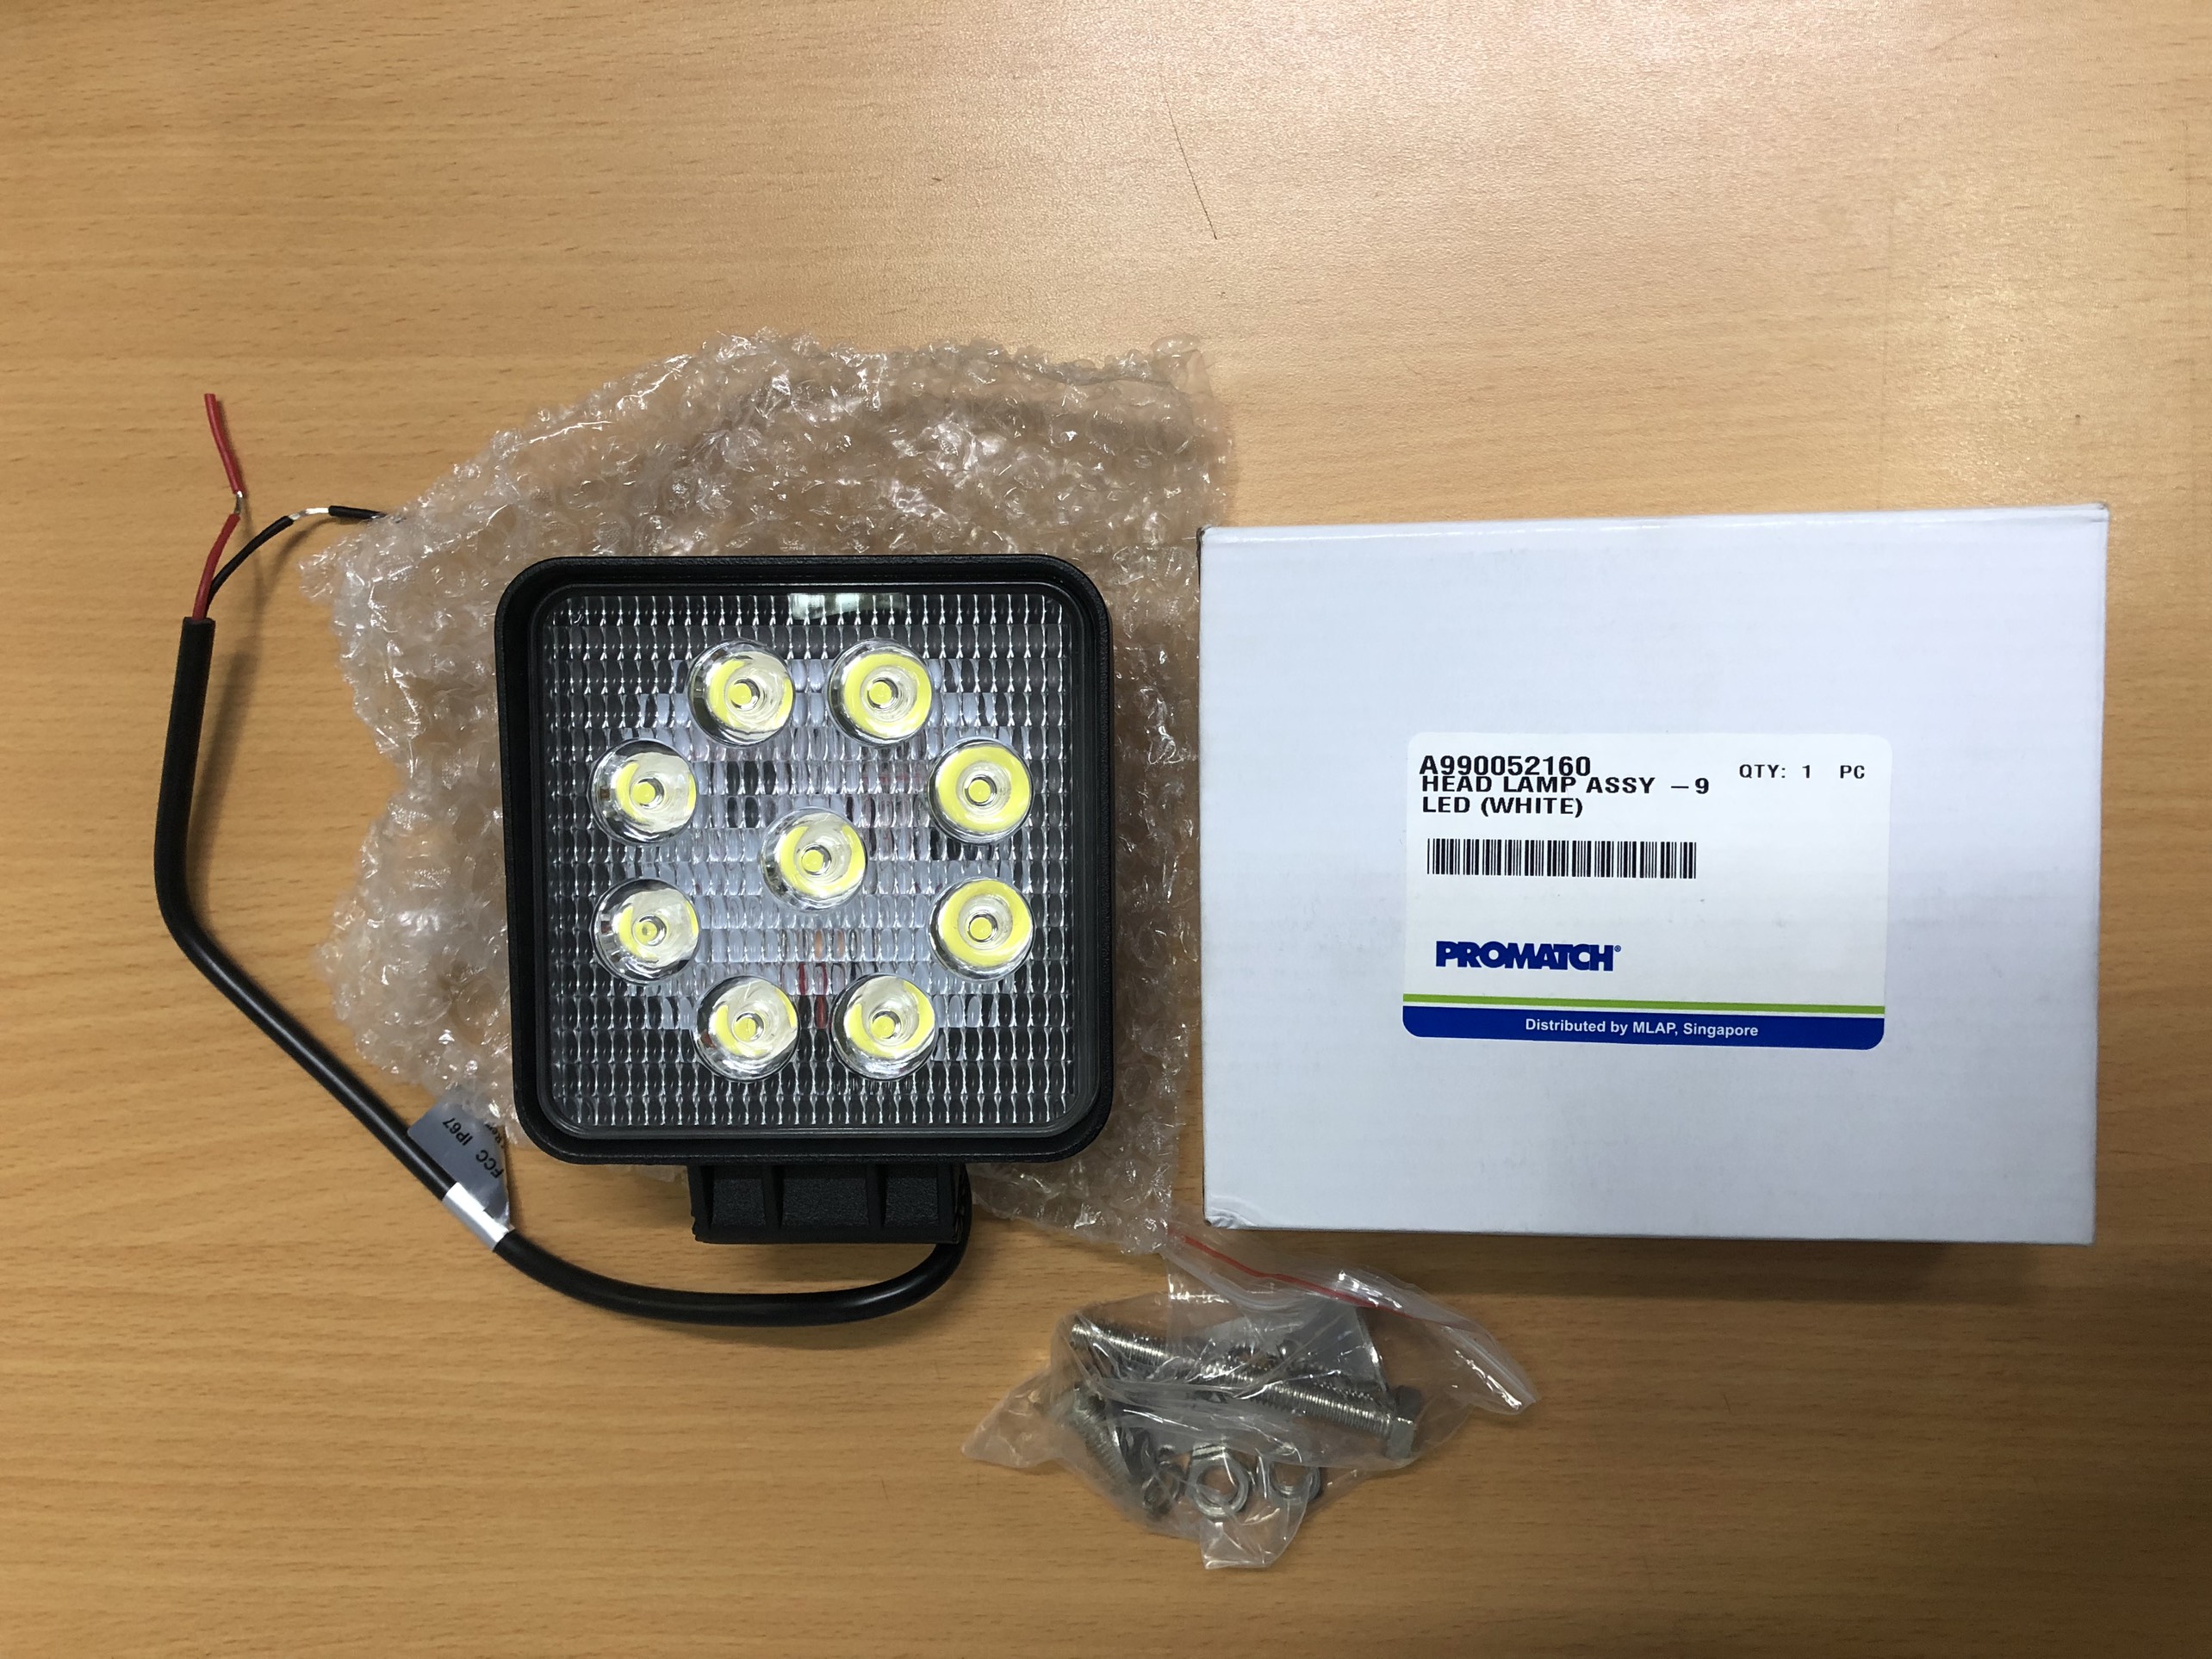 Đèn pha LED Mitsubishi Loginext Asia - A990052160 dùng cho xe nâng hoặc thiết bị công nghiệp.